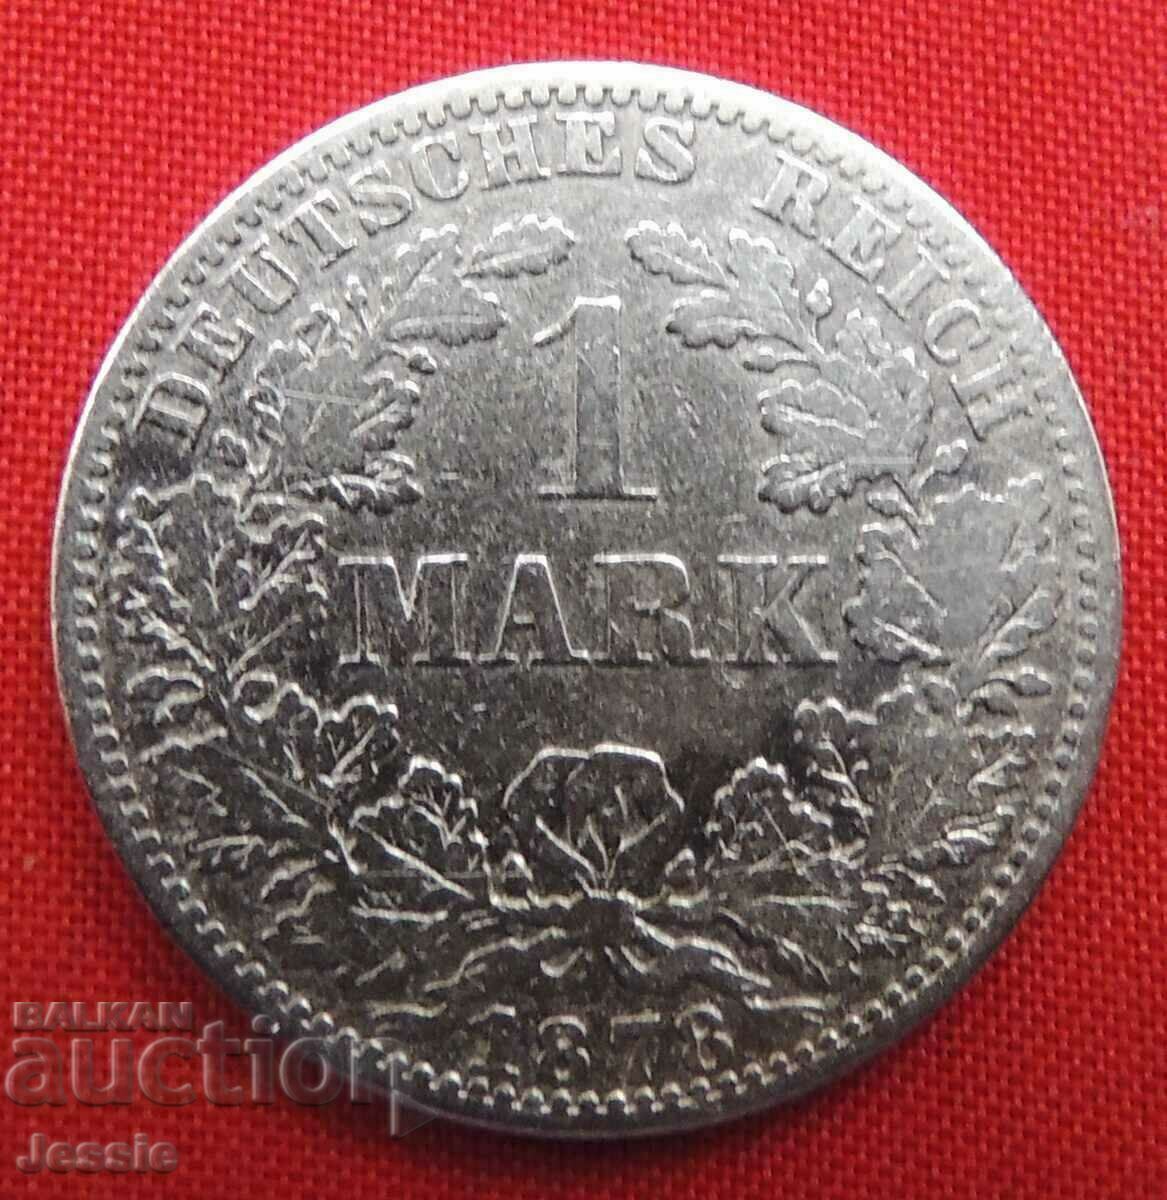 1 Marcu 1878 Un Berlin de argint Germania